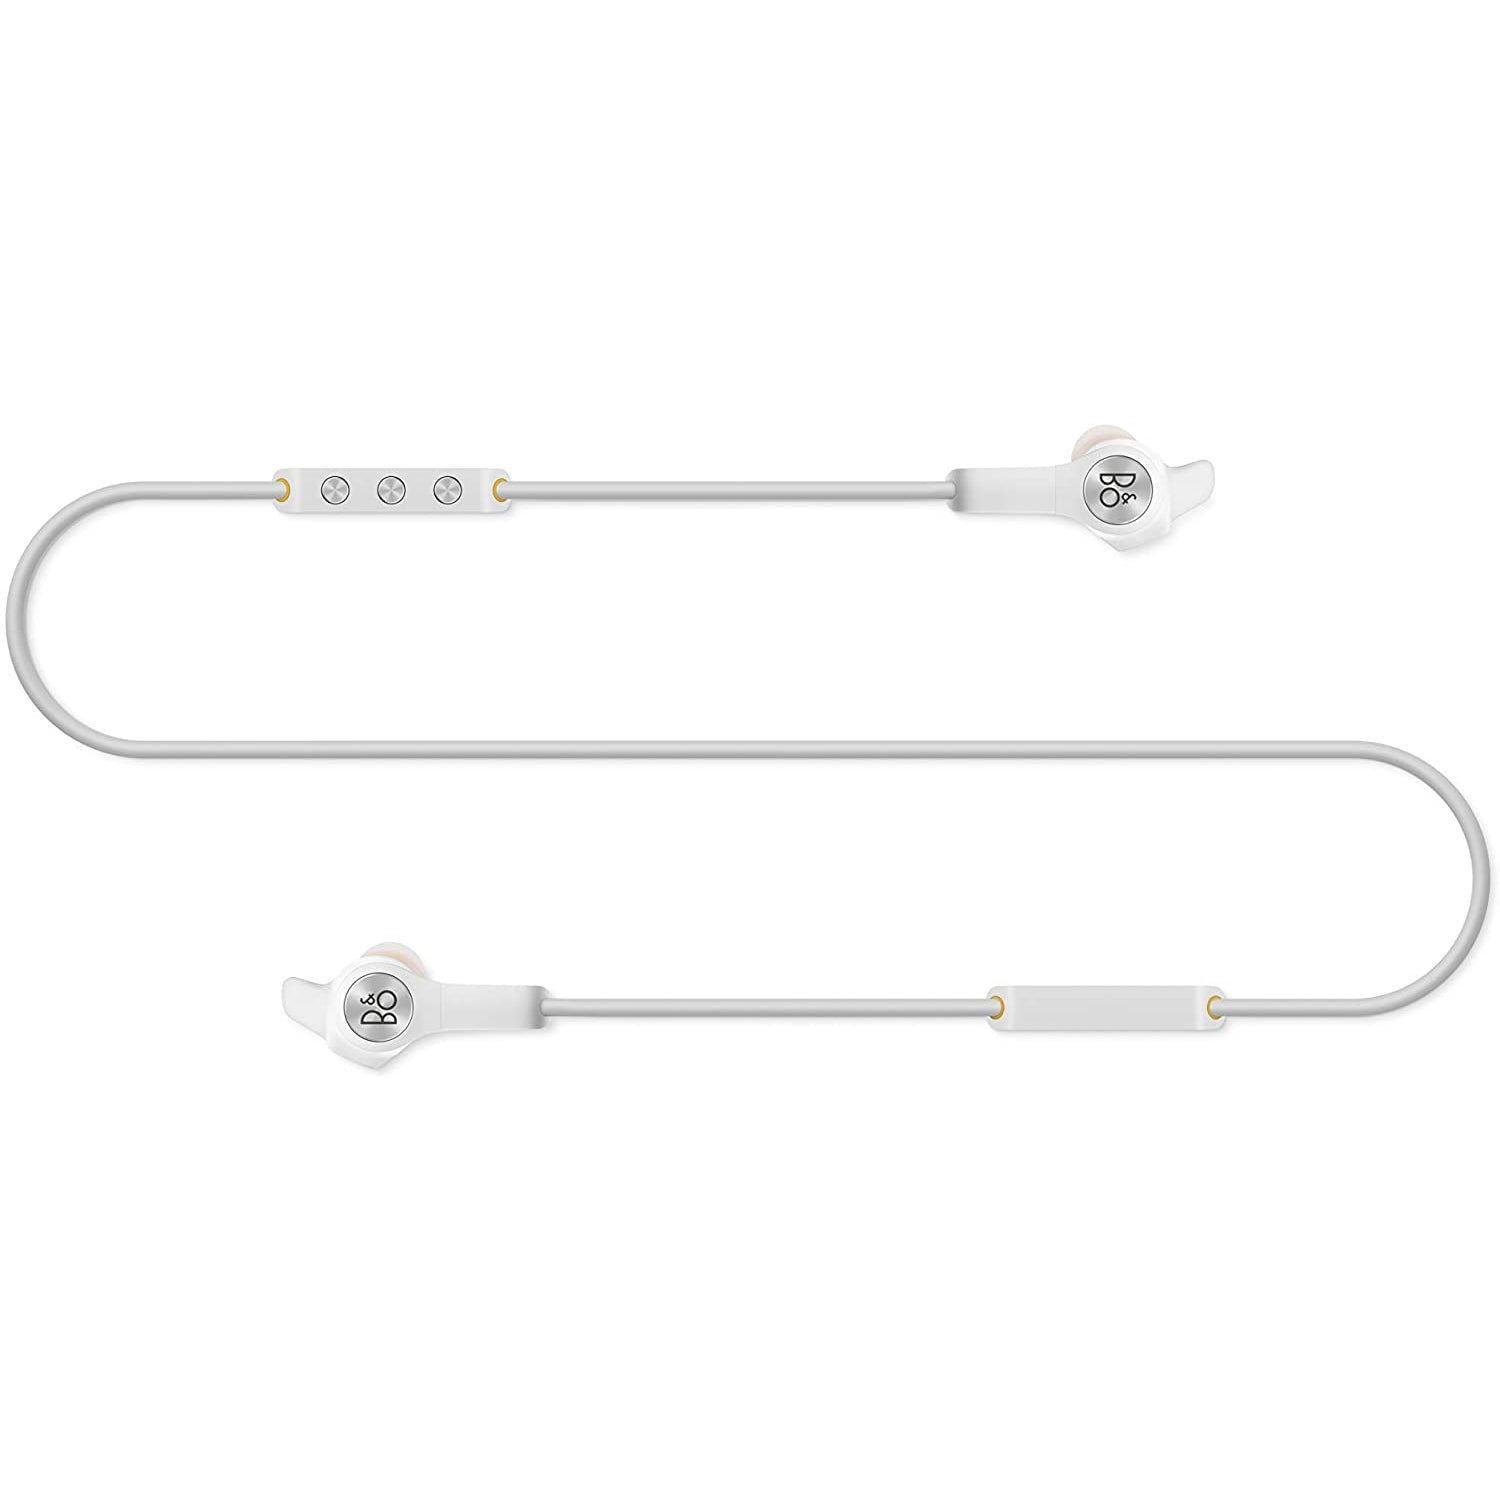 Bang & Olufsen Beoplay E6 Motion In-Ear Wireless Earphones - White